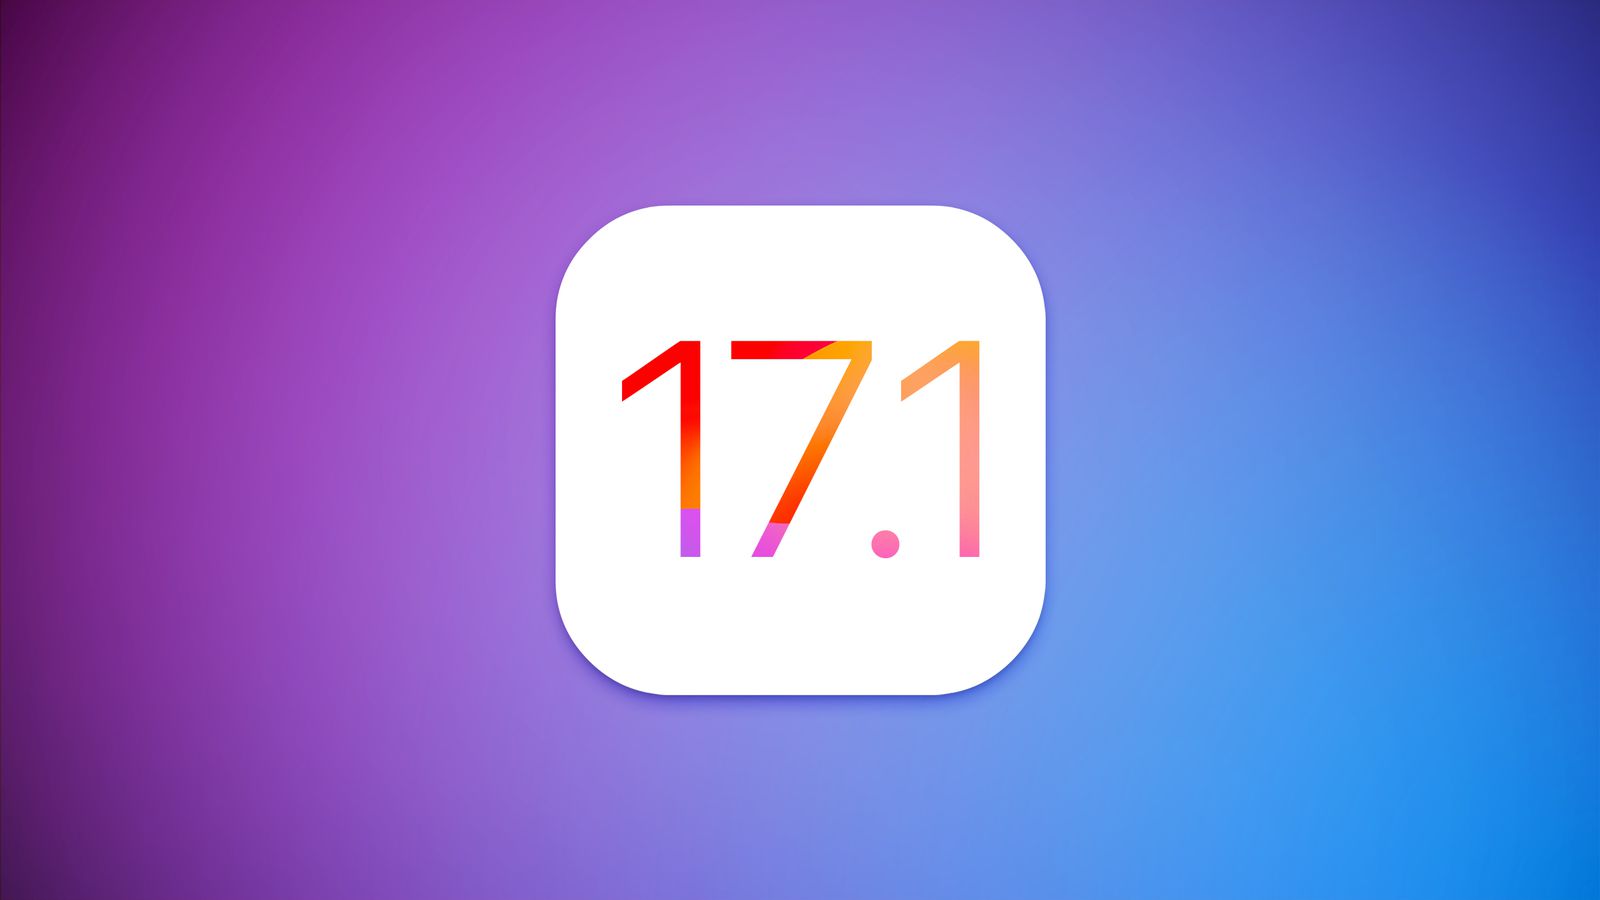 Вышла iOS 17.1 beta 2 для разработчиков